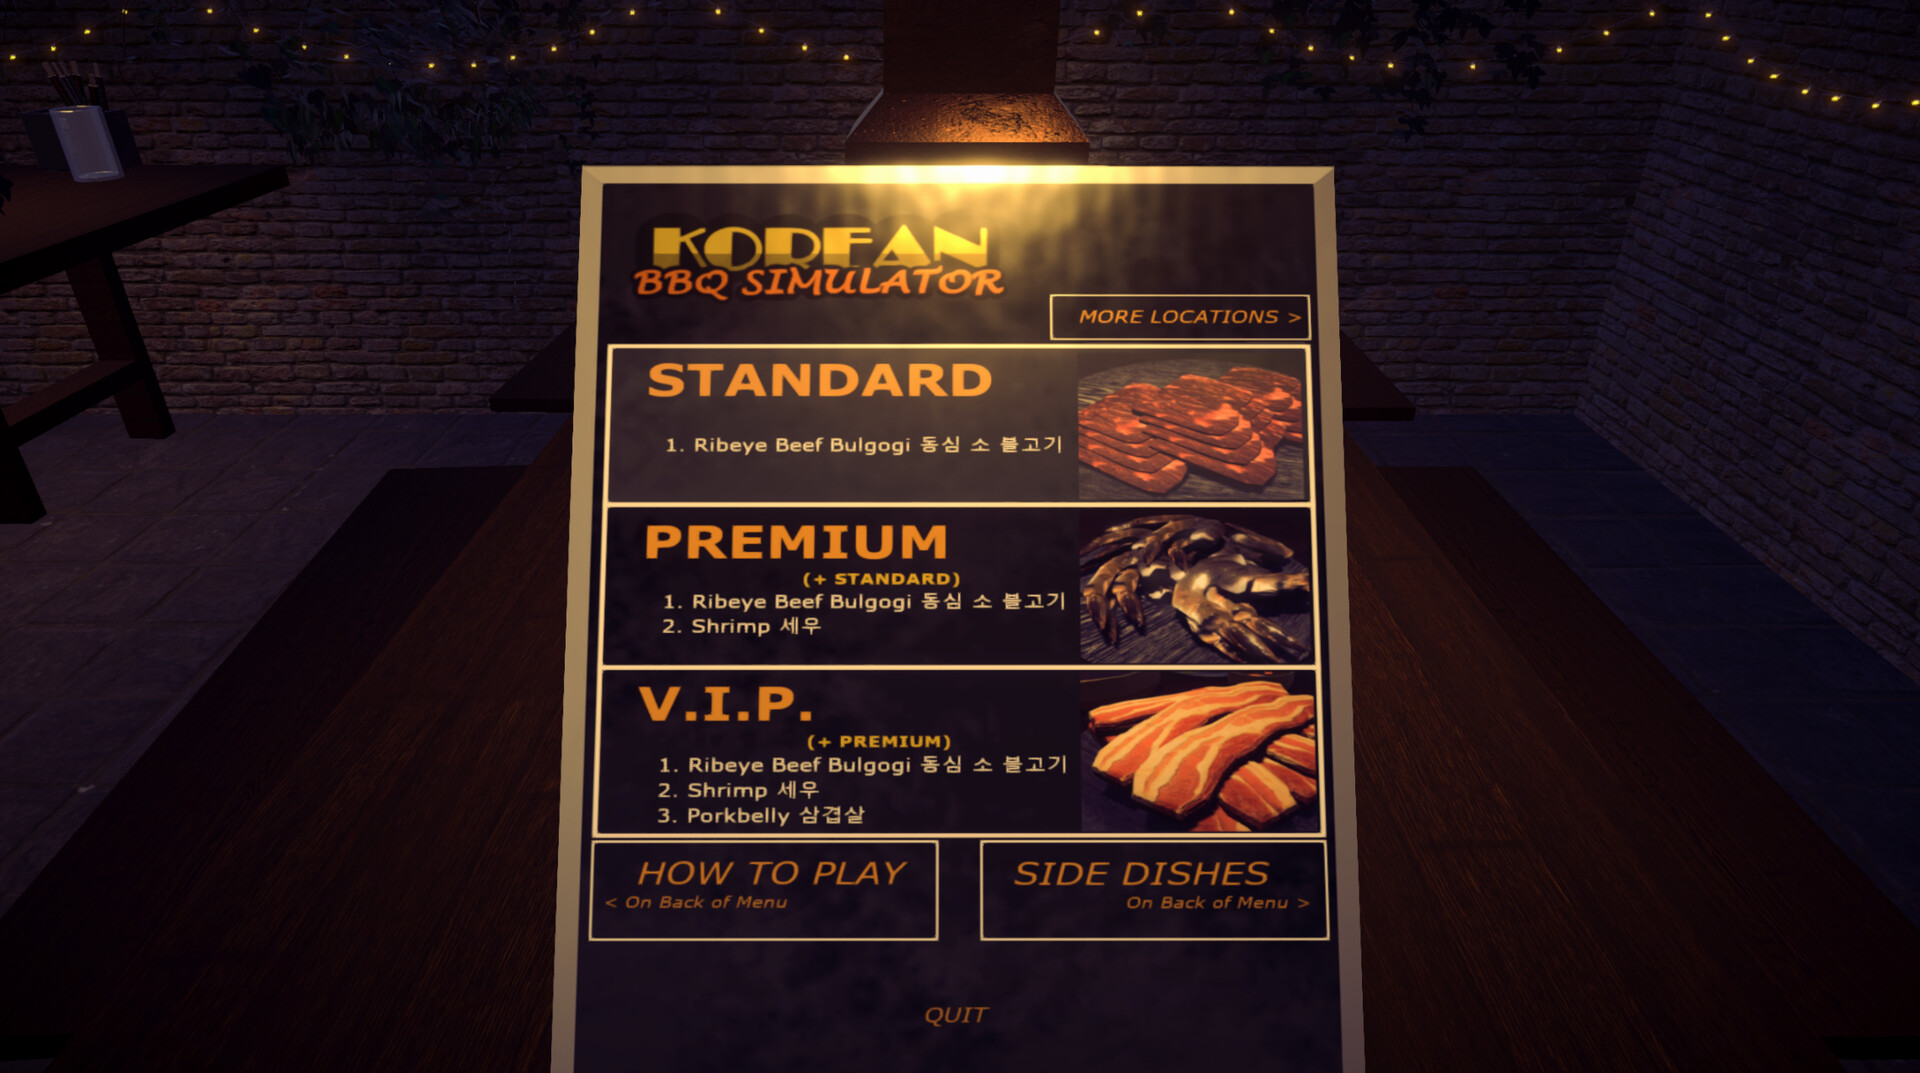 Korean BBQ Simulator Steam CD Key [$ 4.42]